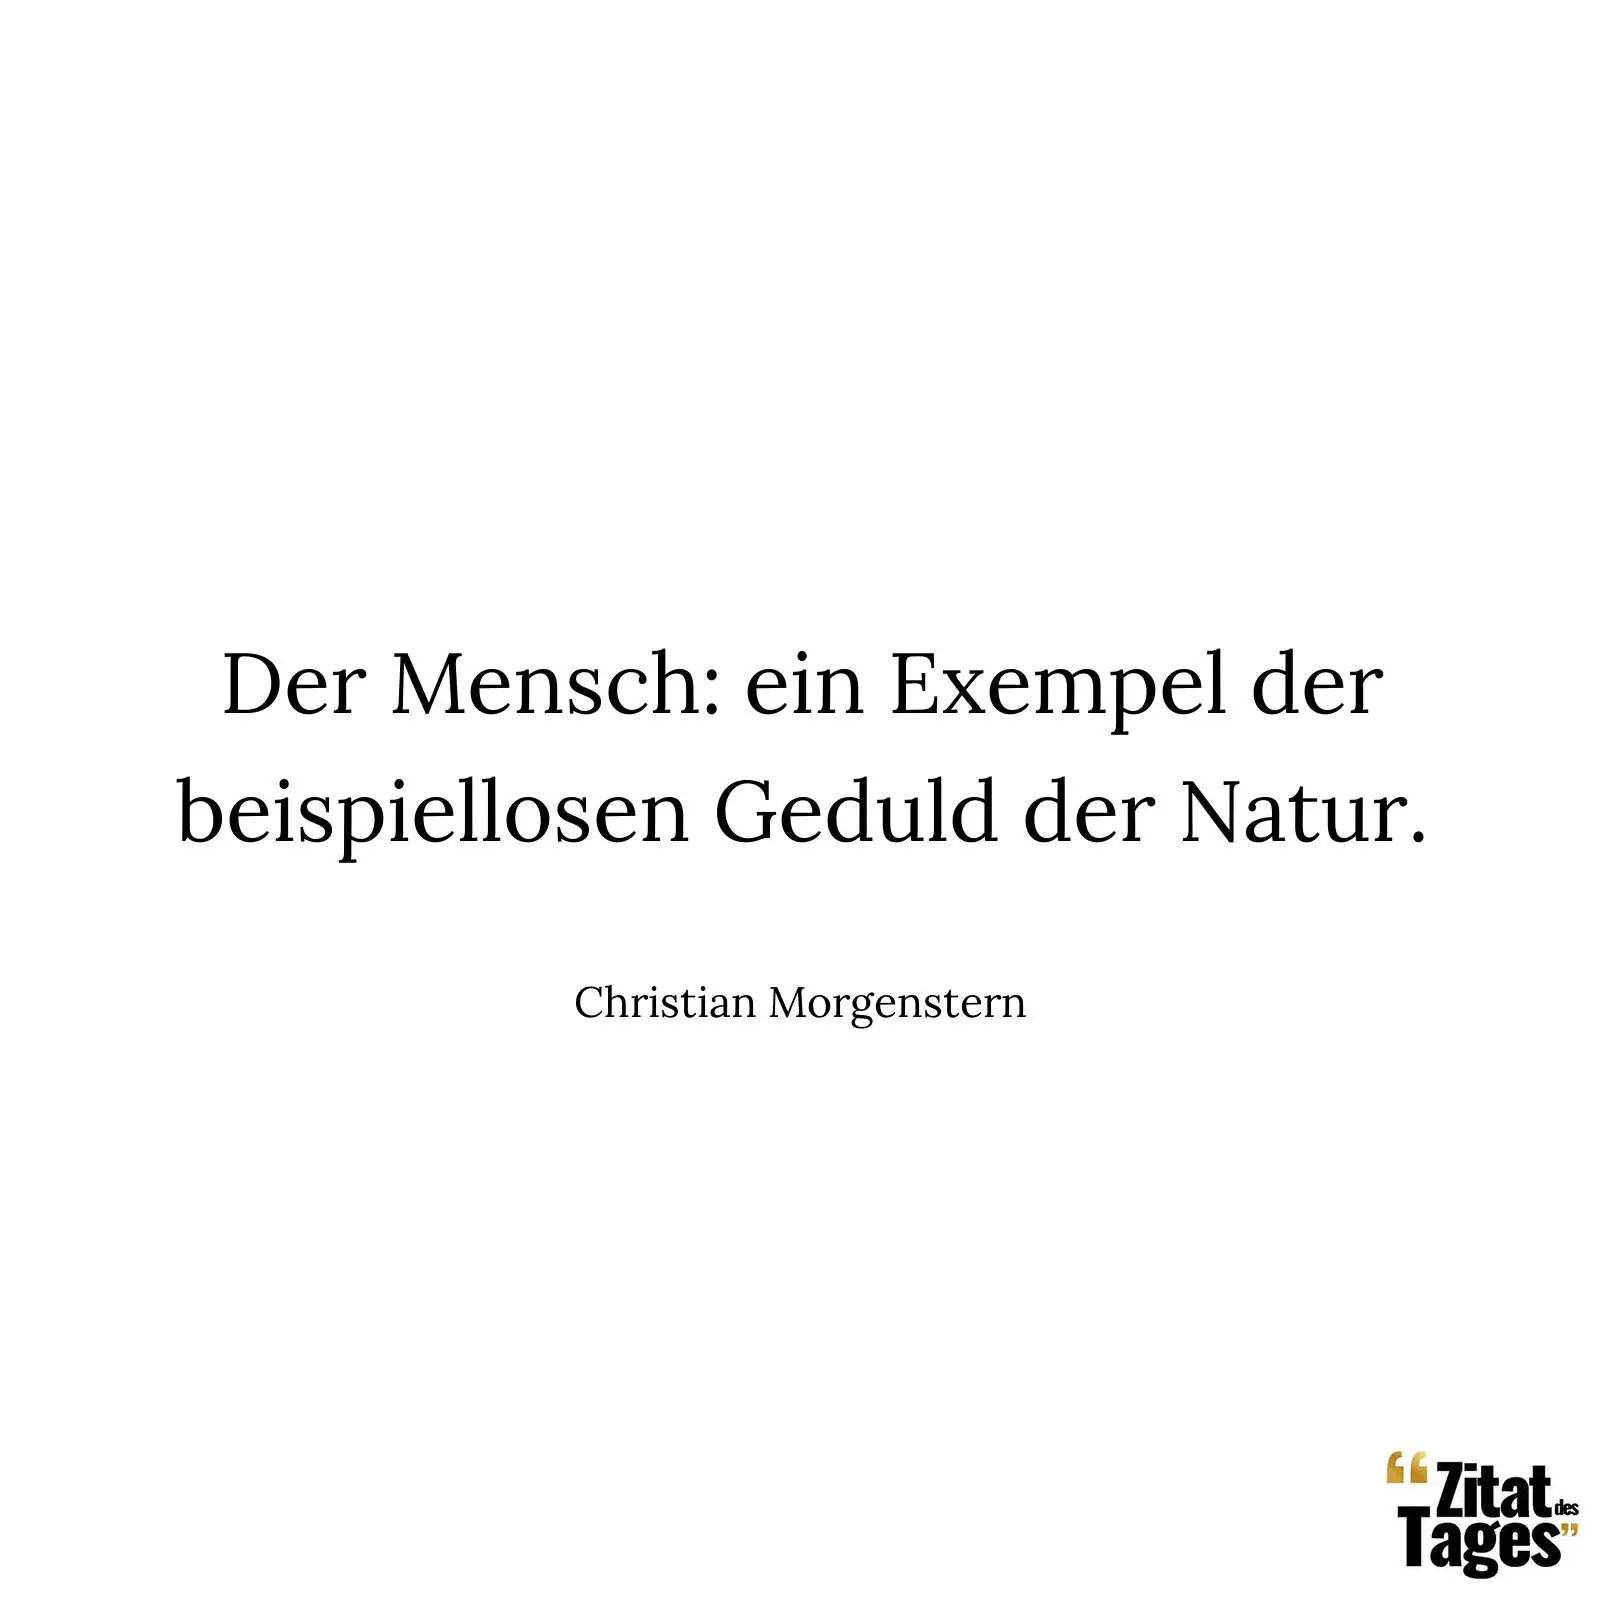 Der Mensch: ein Exempel der beispiellosen Geduld der Natur. - Christian Morgenstern